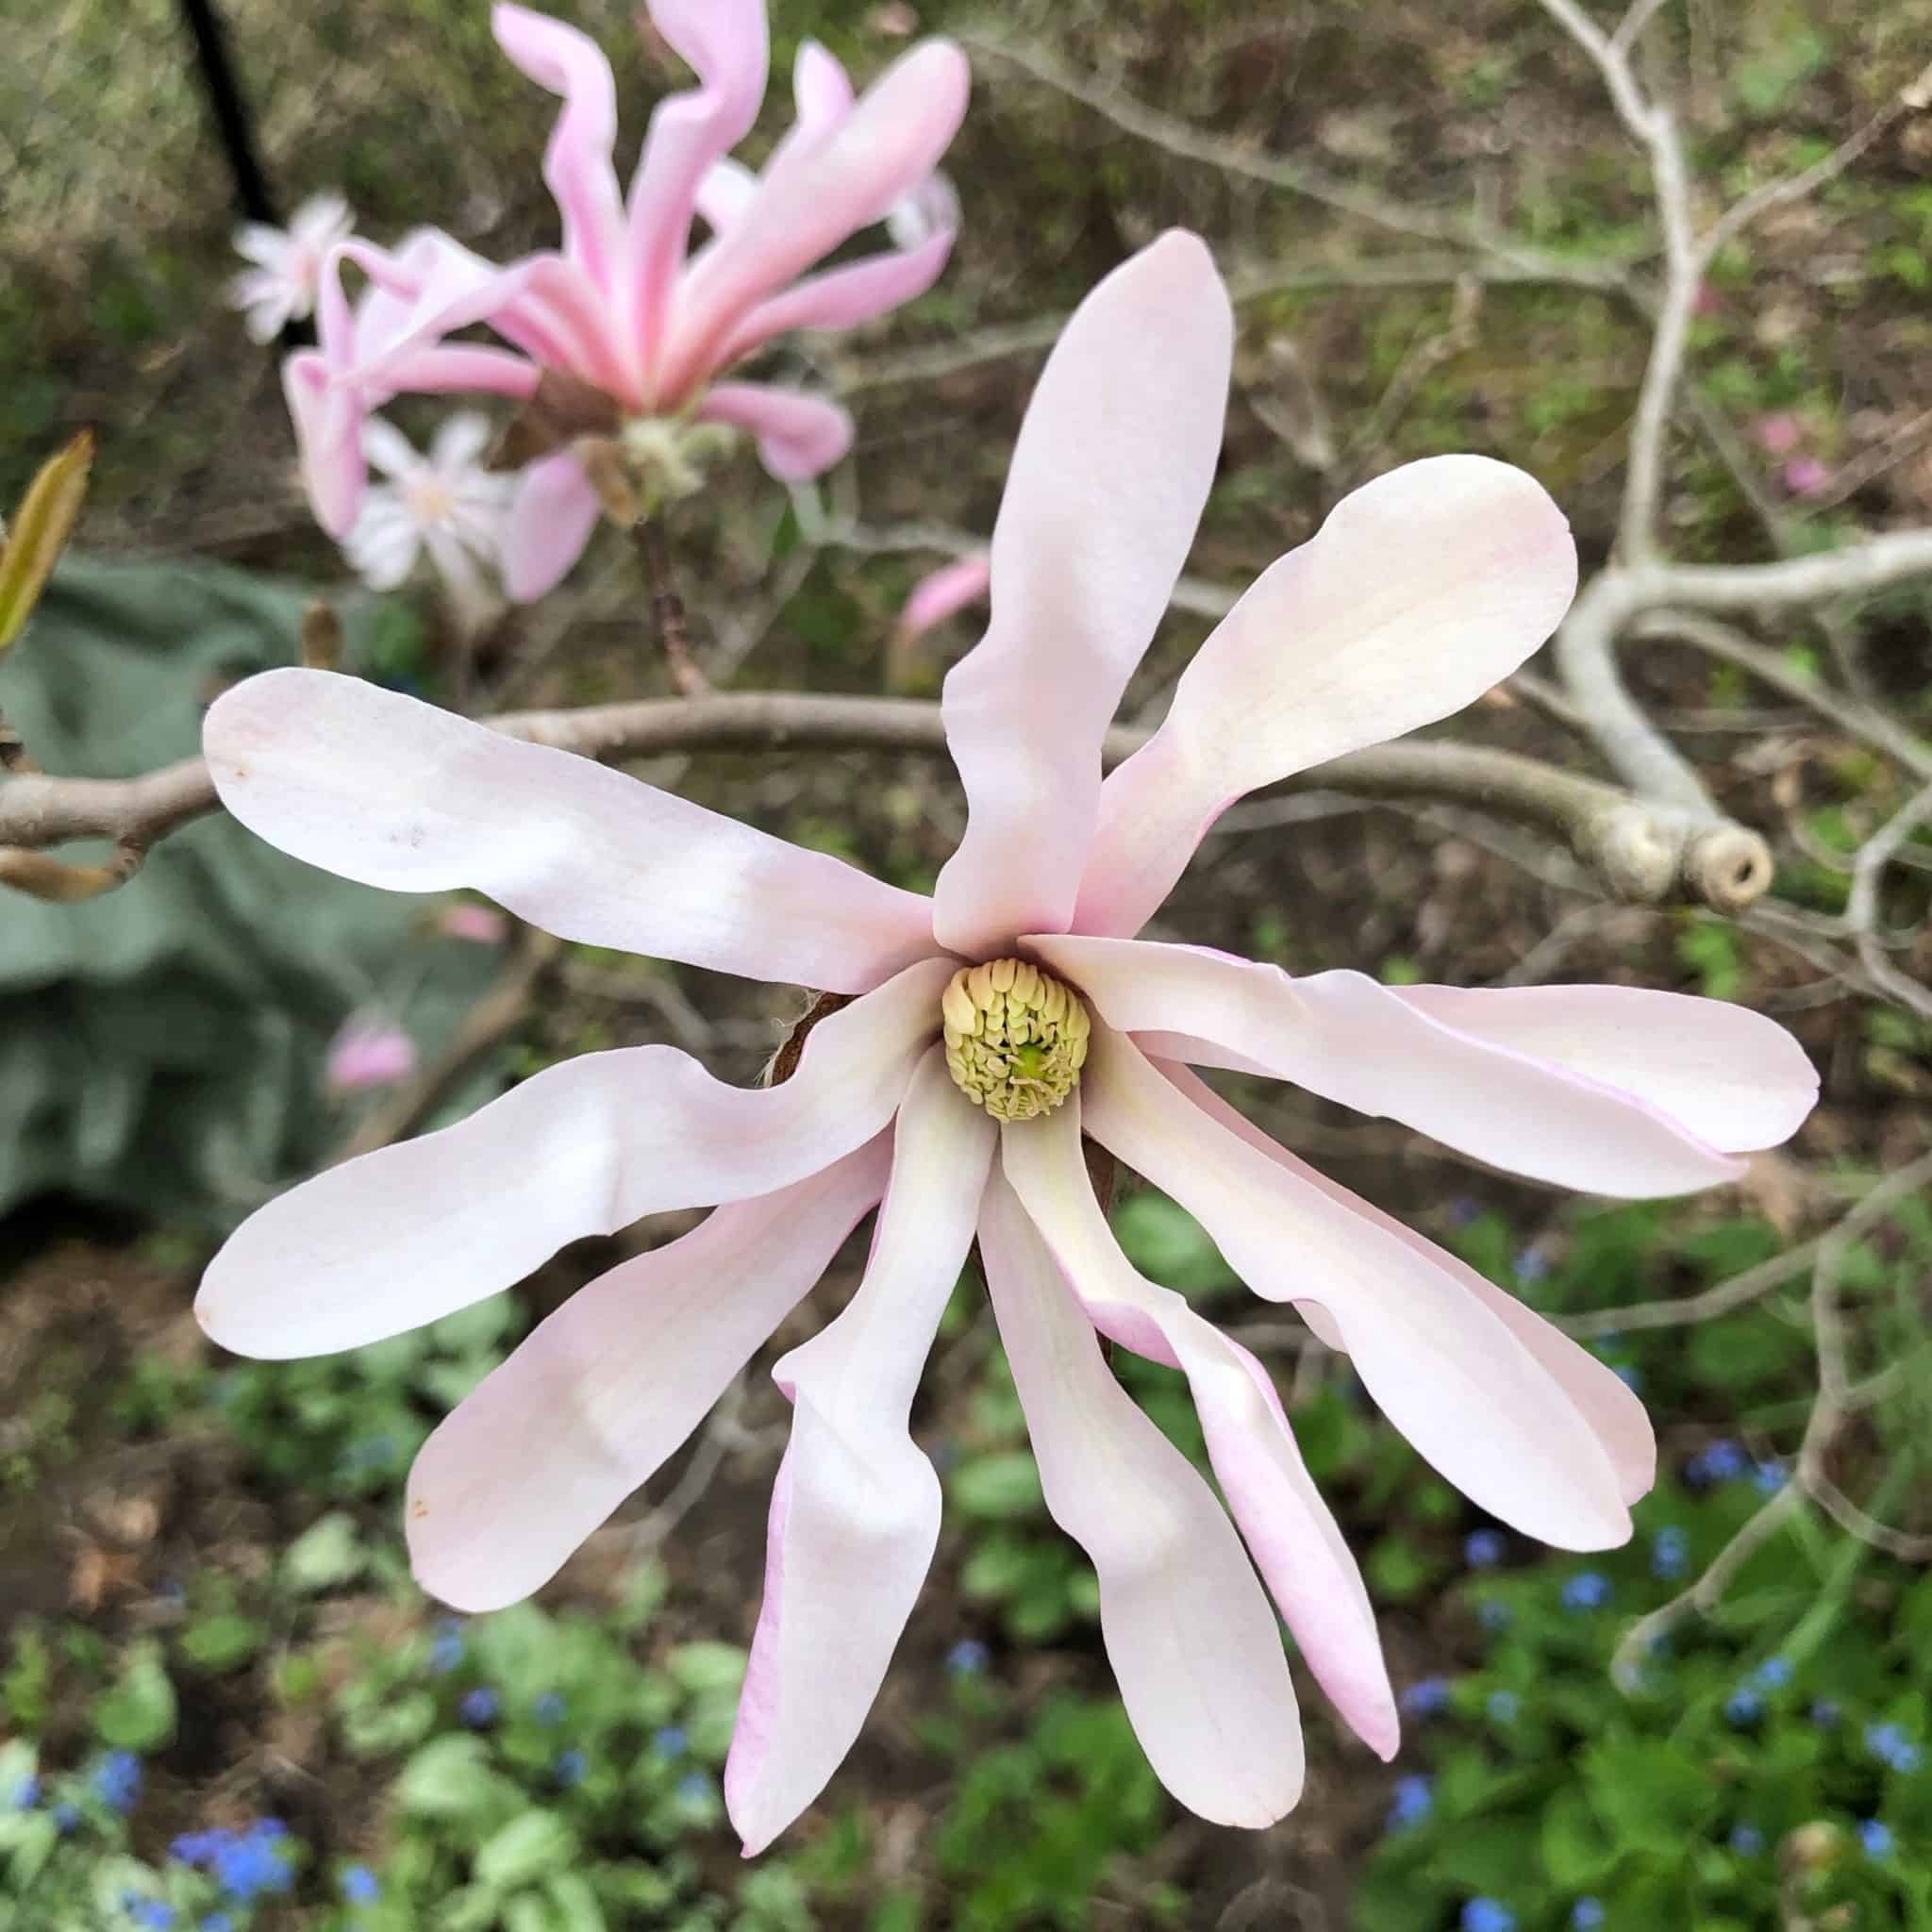 'Leonard Messel' magnolia